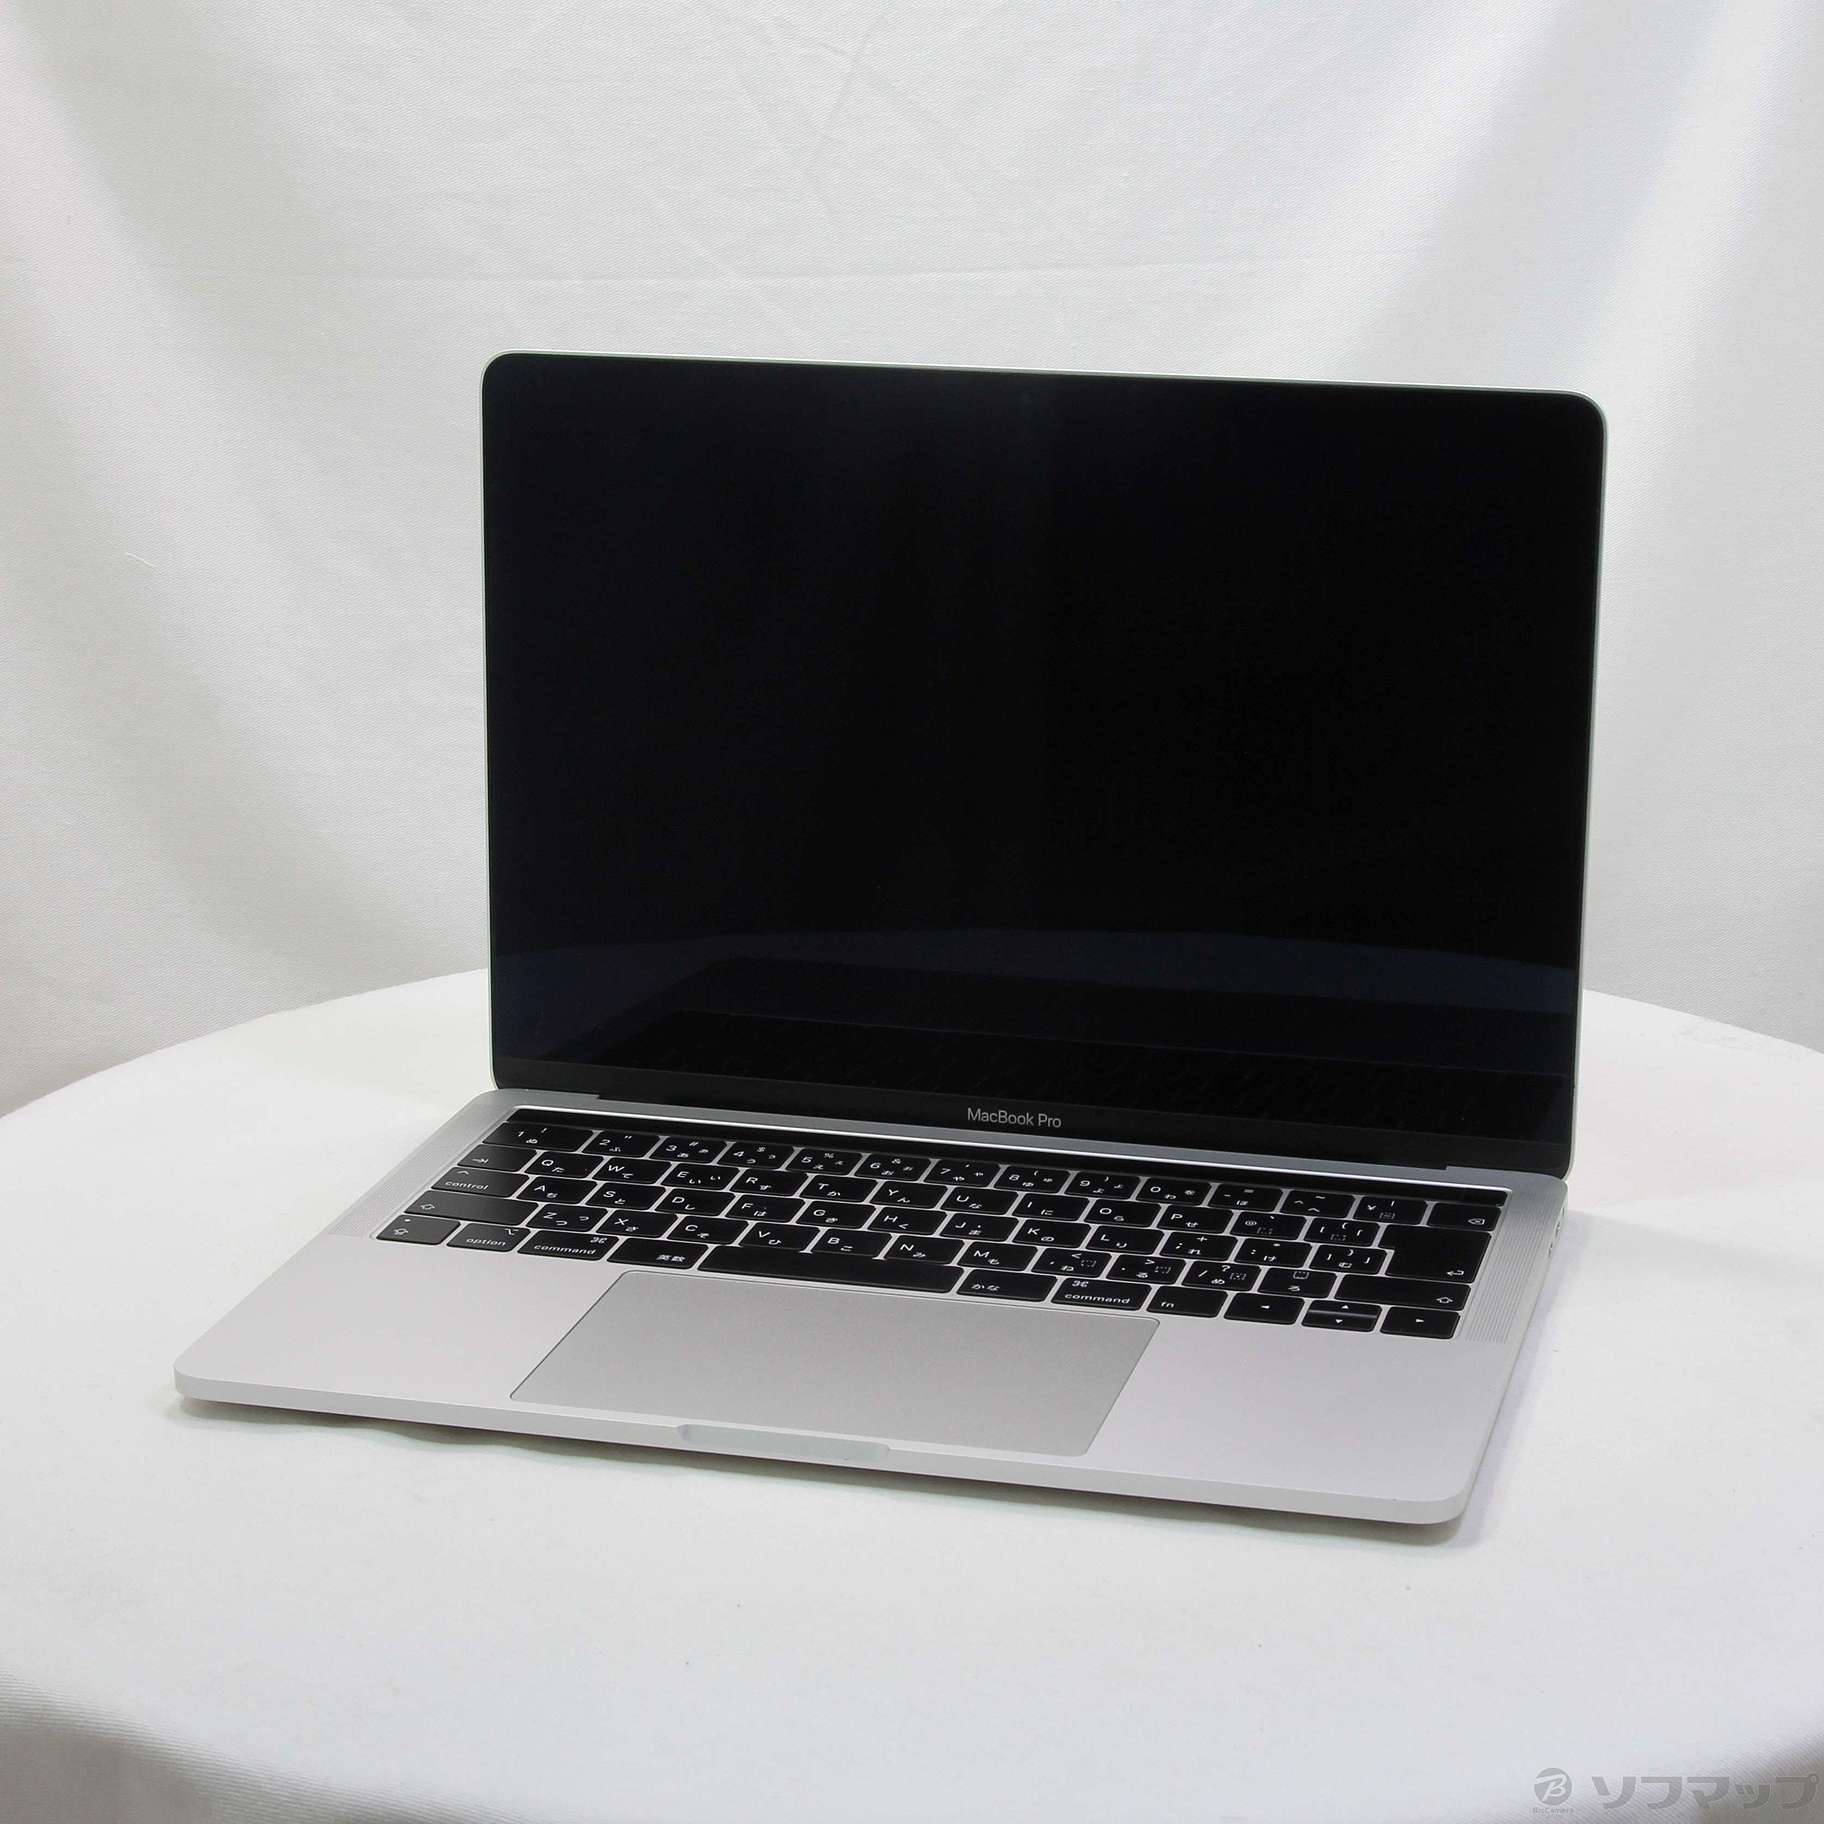 MacBook Pro シルバー 2019年モデル MV992J/A www.krzysztofbialy.com